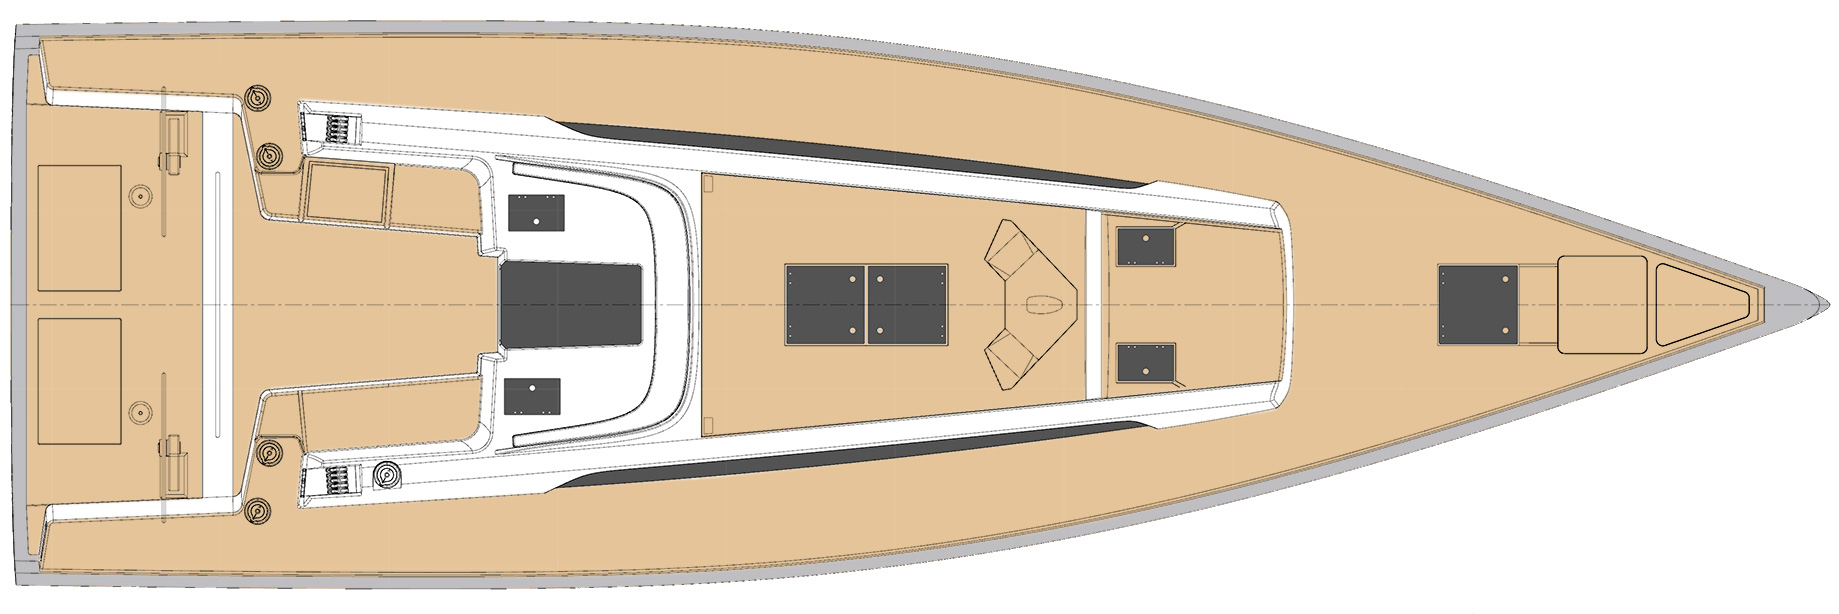 44ft sailboat